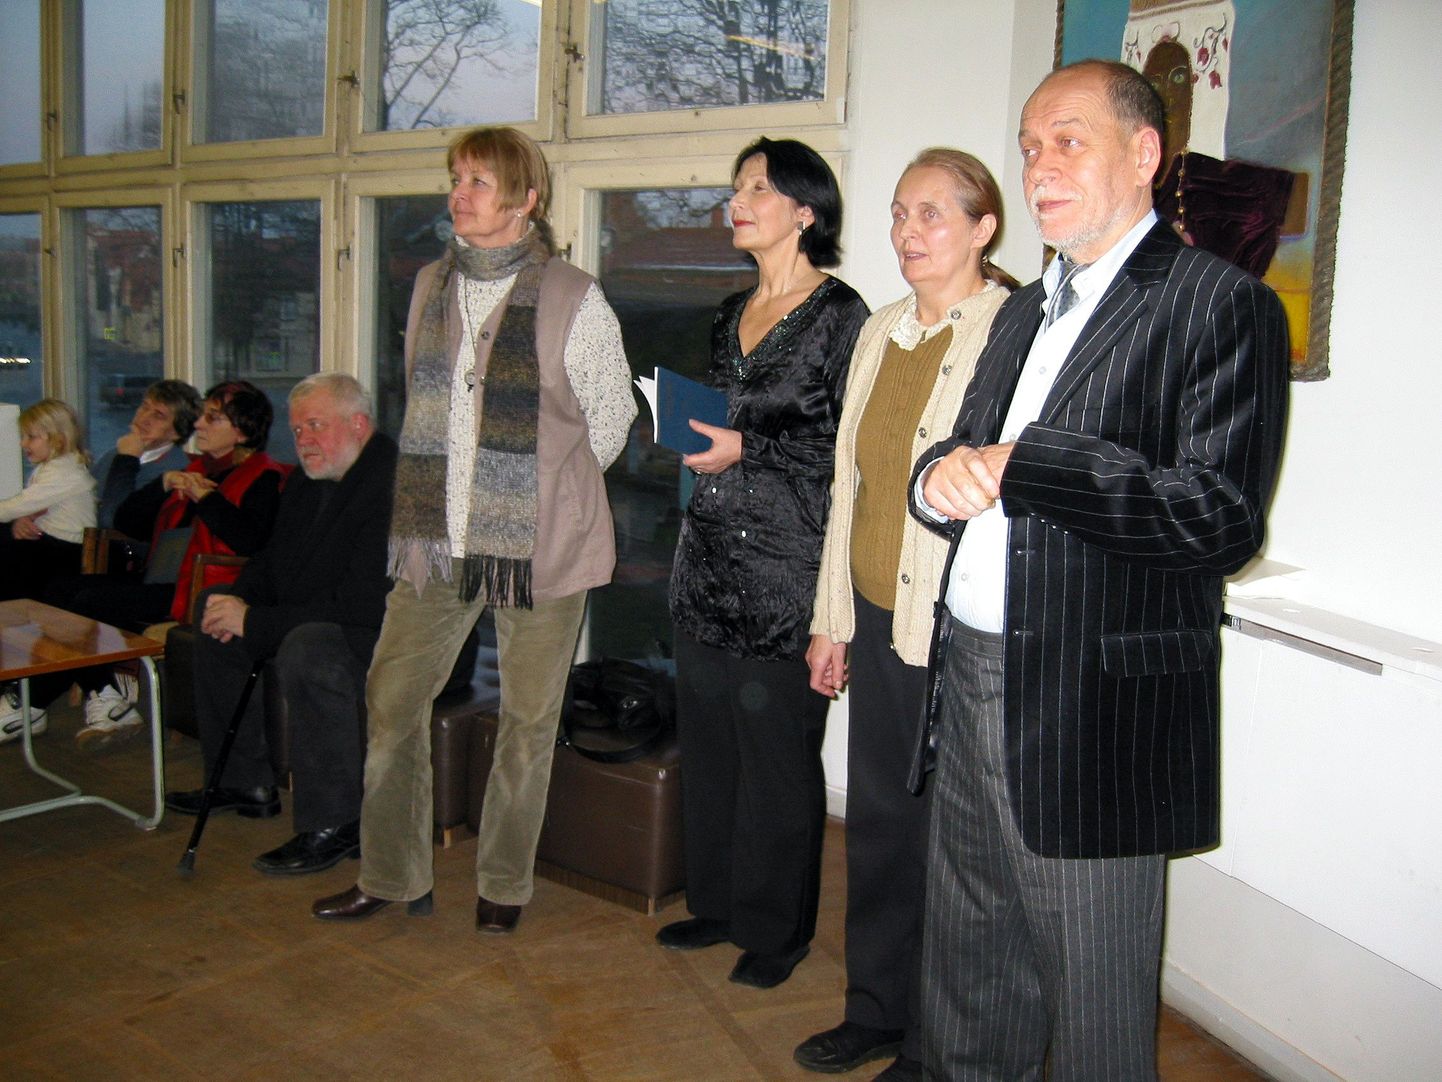 Näituse avamisele olid tulnud Viljandi kunstisaali (paremalt) Robert Suvi, Mai Paris, Urve Sunny-Dzidzaria, Ann Mikk ja Lemming Nagel.